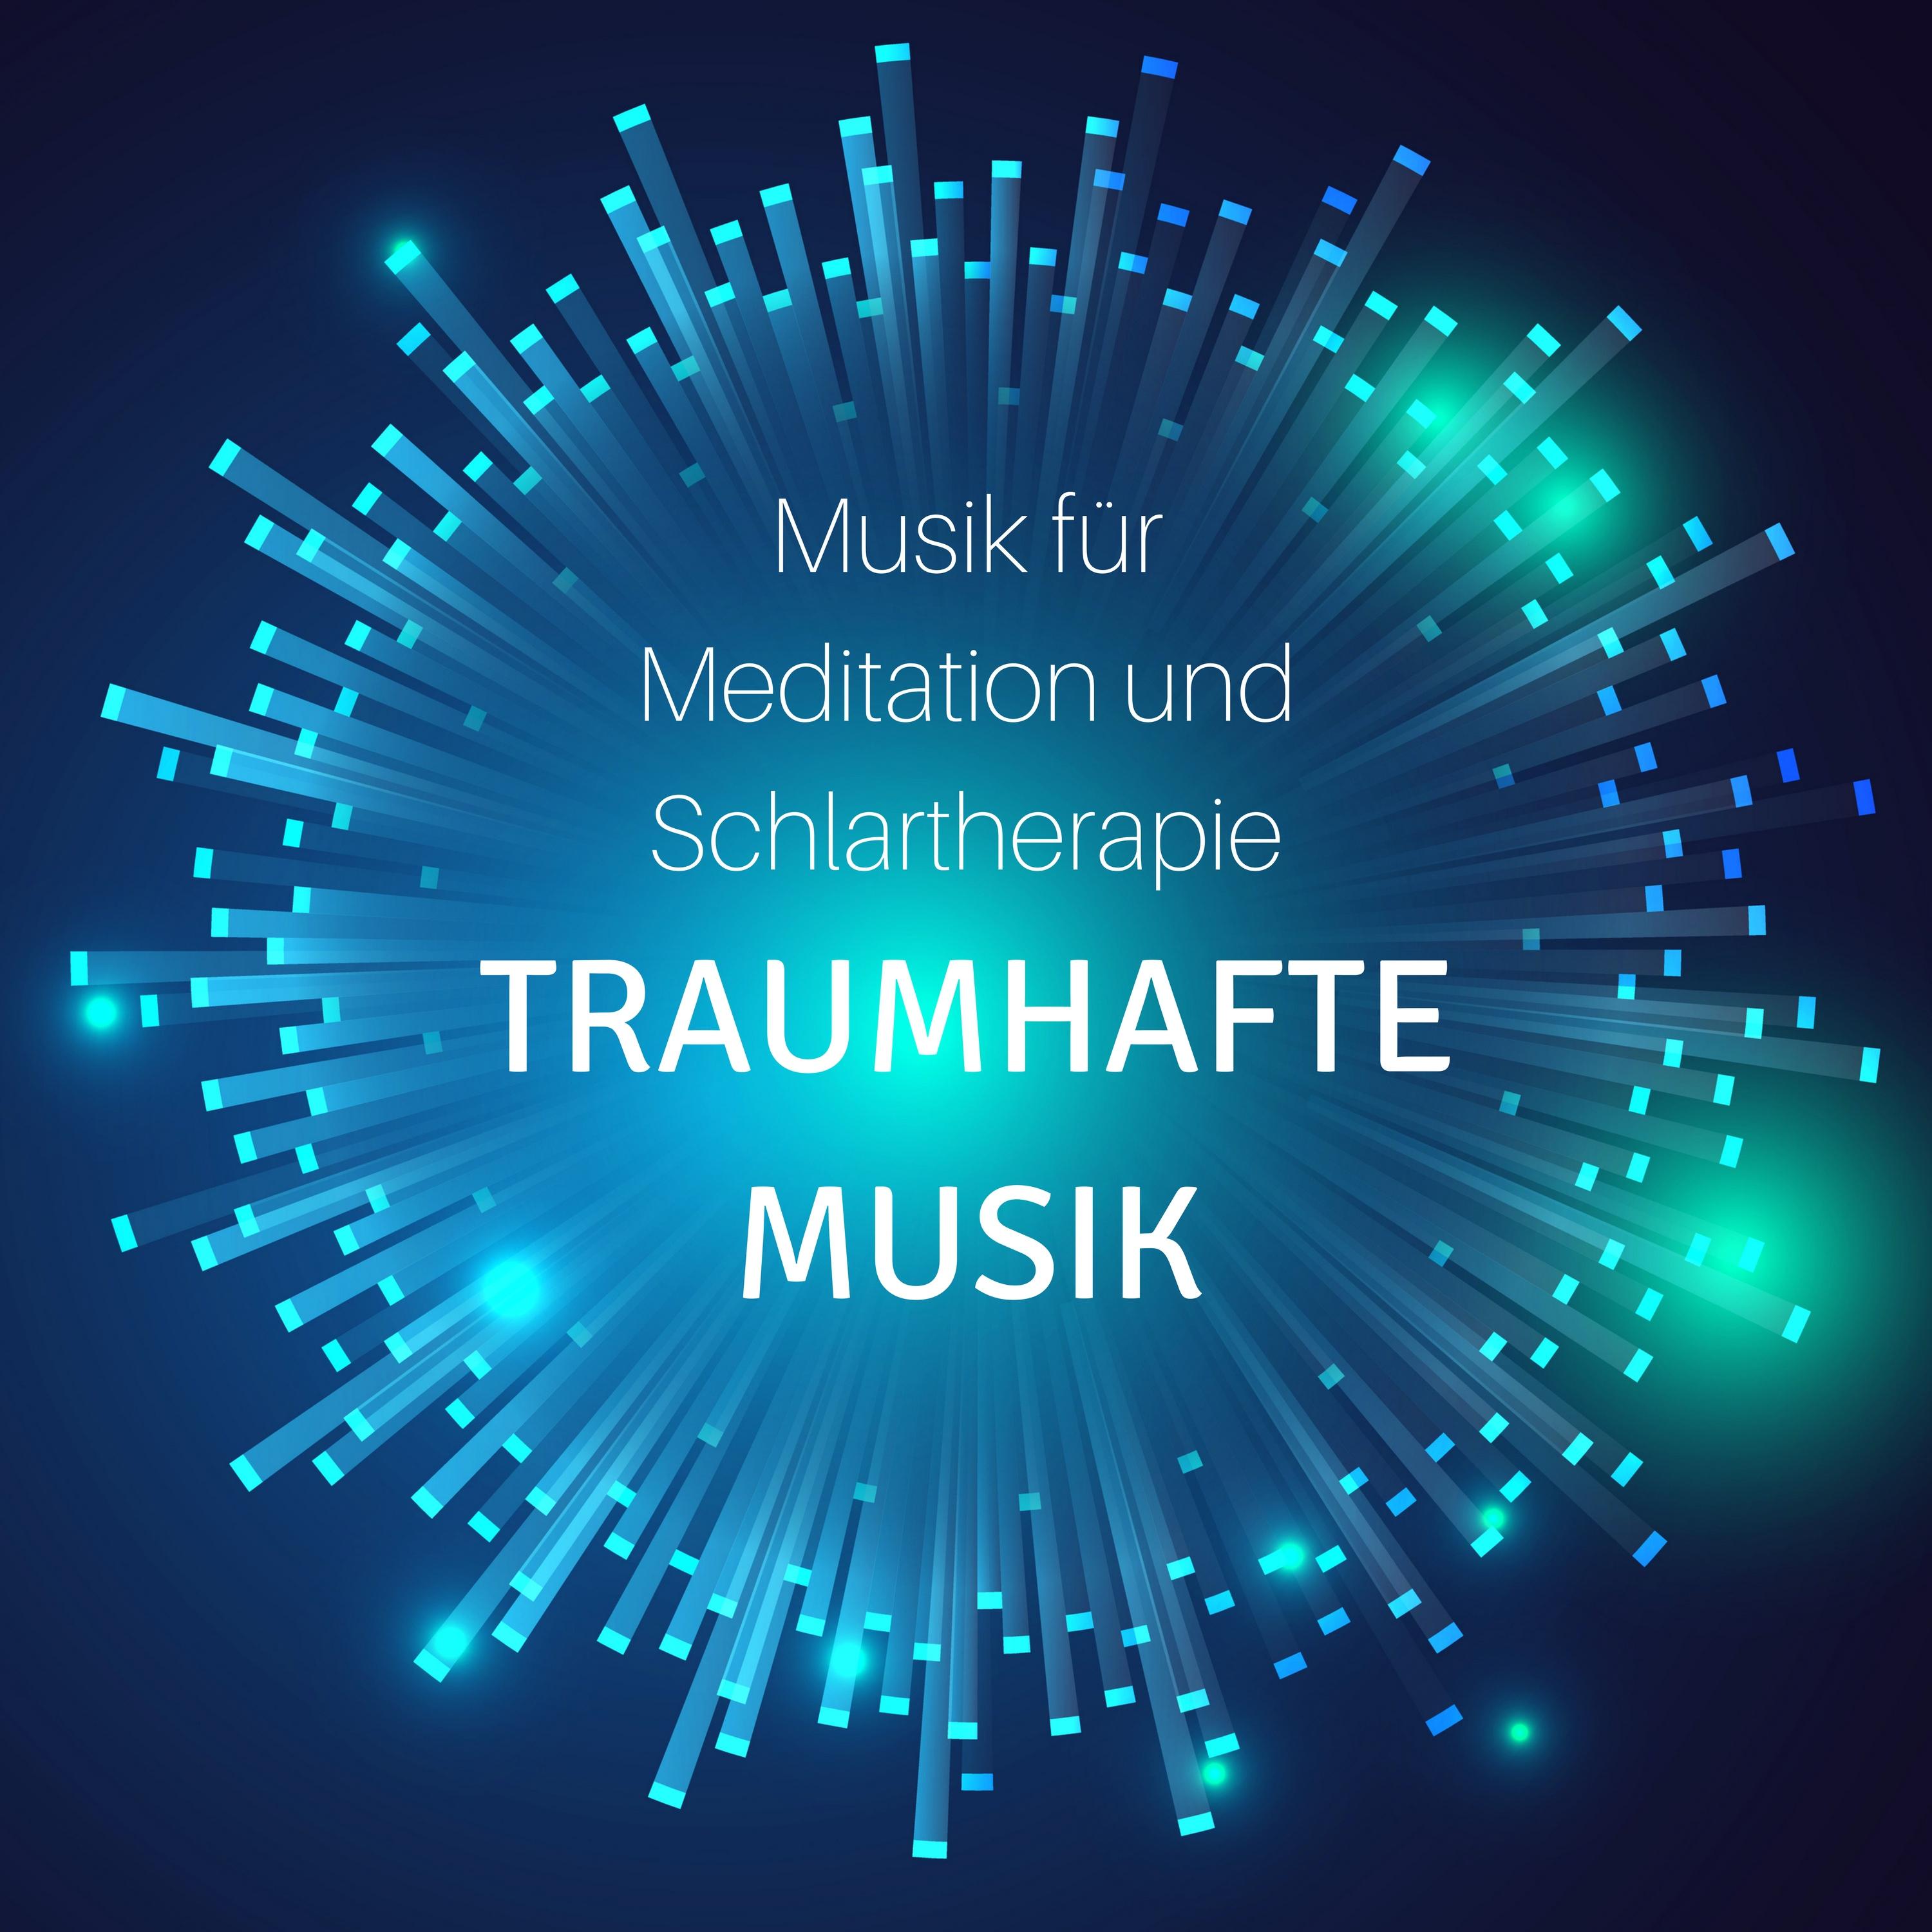 Traumhafte Musik: Musik für Meditation und Schlartherapie, Stress Reduzieren